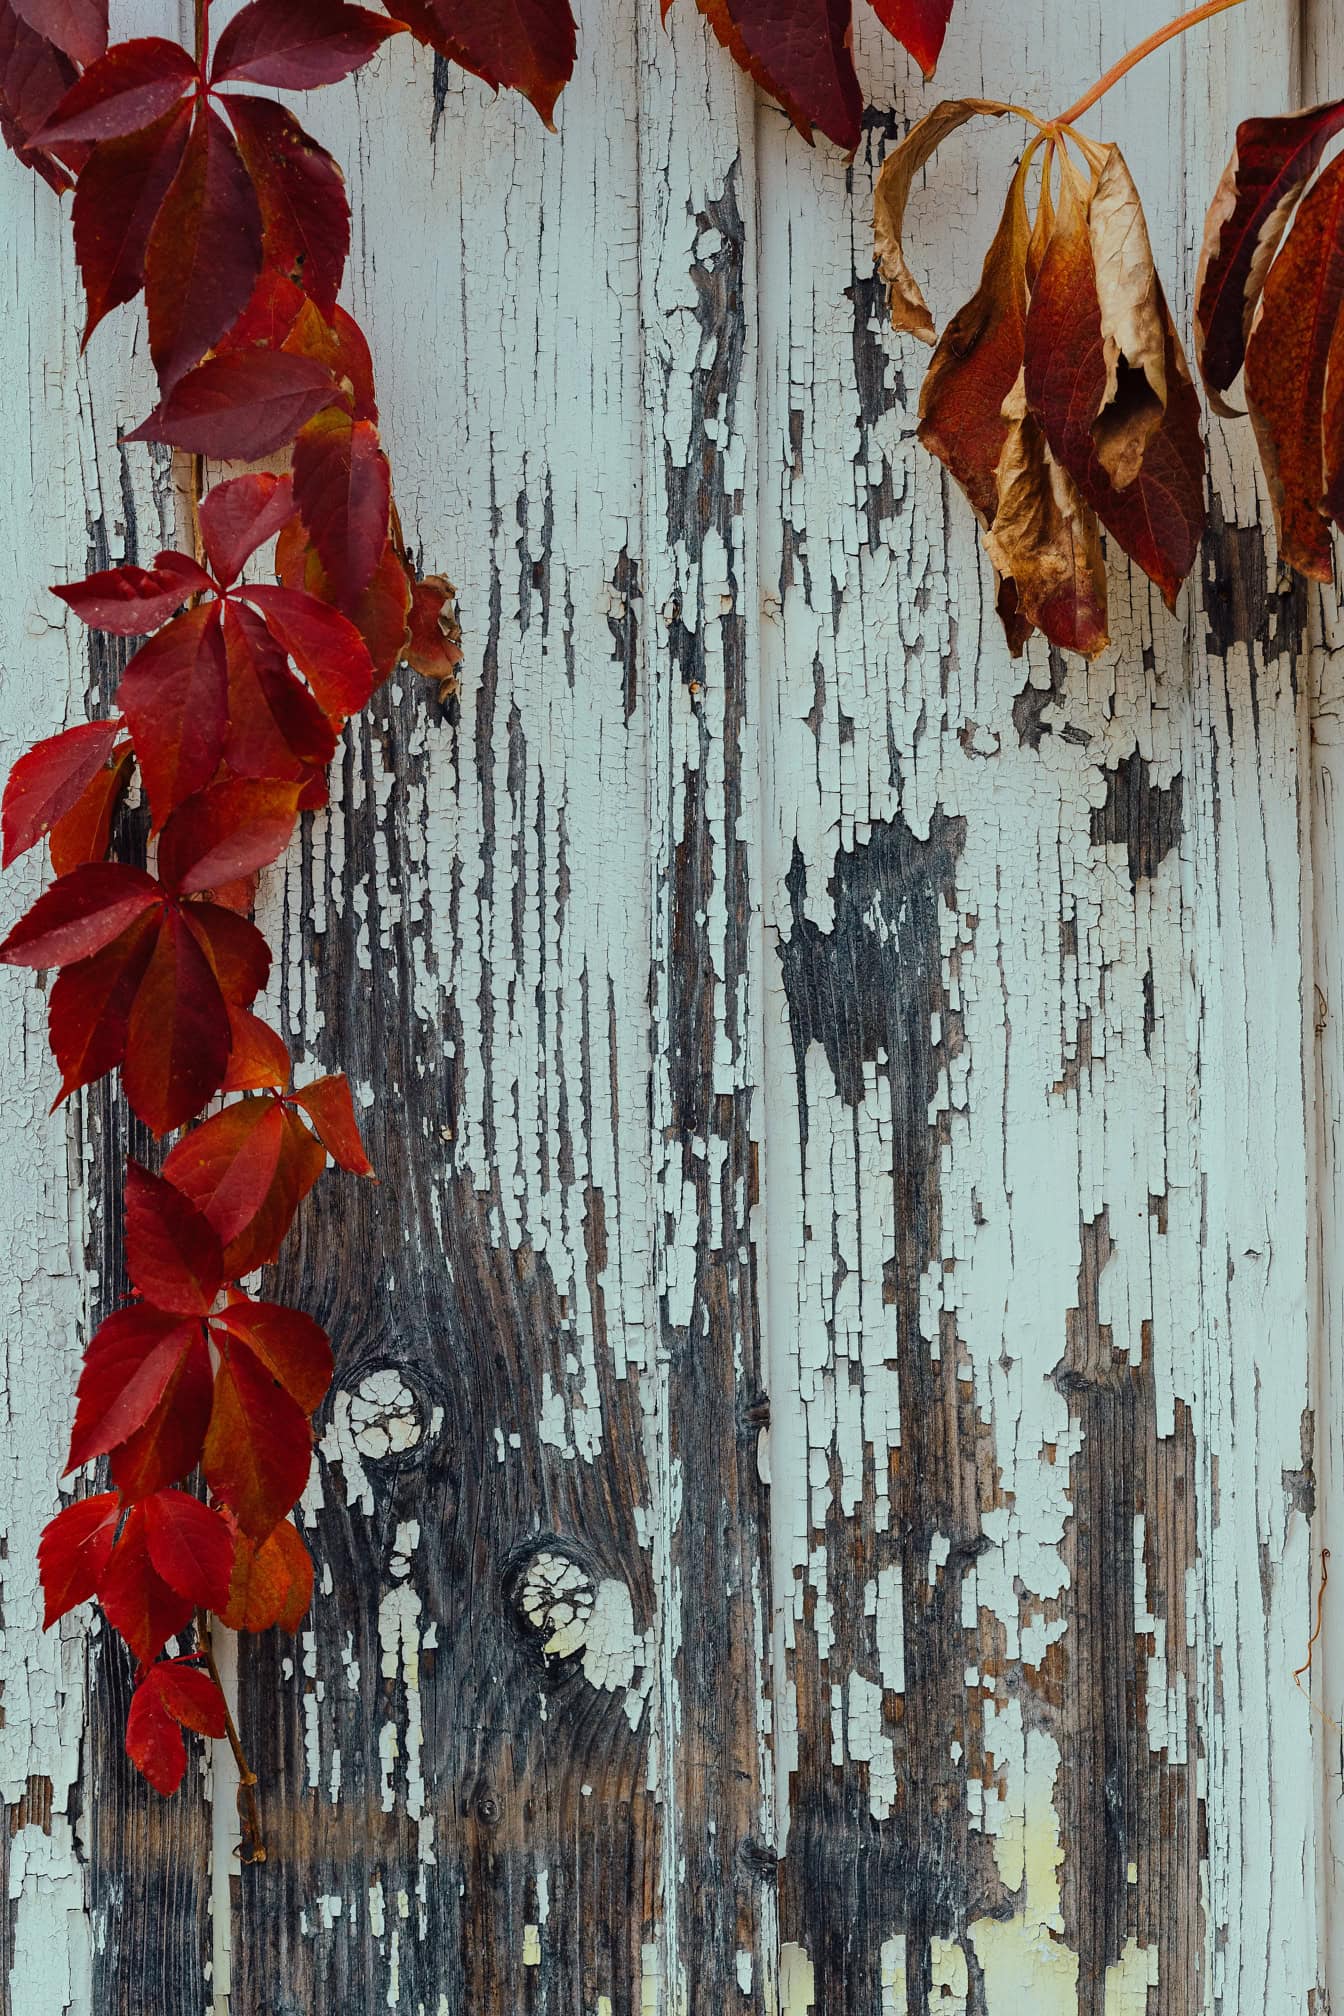 Czerwonawe liście bluszczu na drewnianej powierzchni wykonanej ze starych desek z białą farbą, która się złuszcza